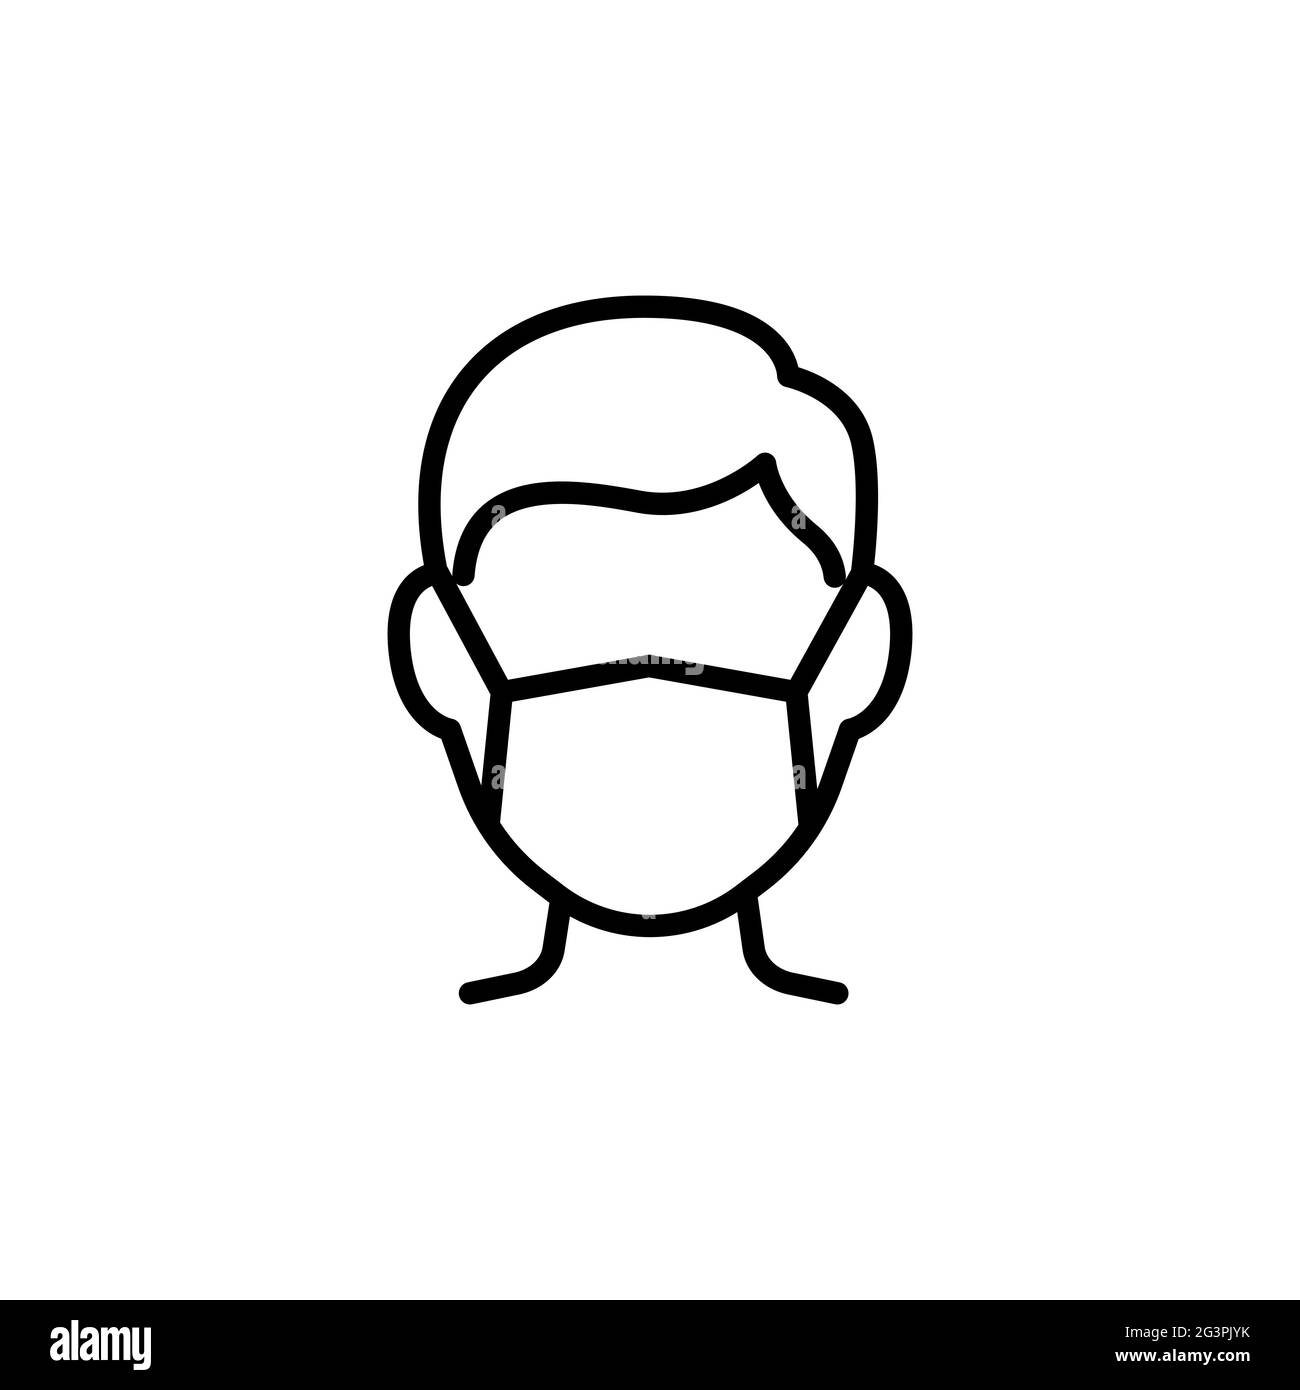 Mann im Gesicht Maske Linie Symbol, Vektor-Piktogramm der Prävention von Krankheiten. Luftverschmutzung, Staub, Grippedarstellung, Schild für den Shop für medizinische Geräte. Stock Vektor